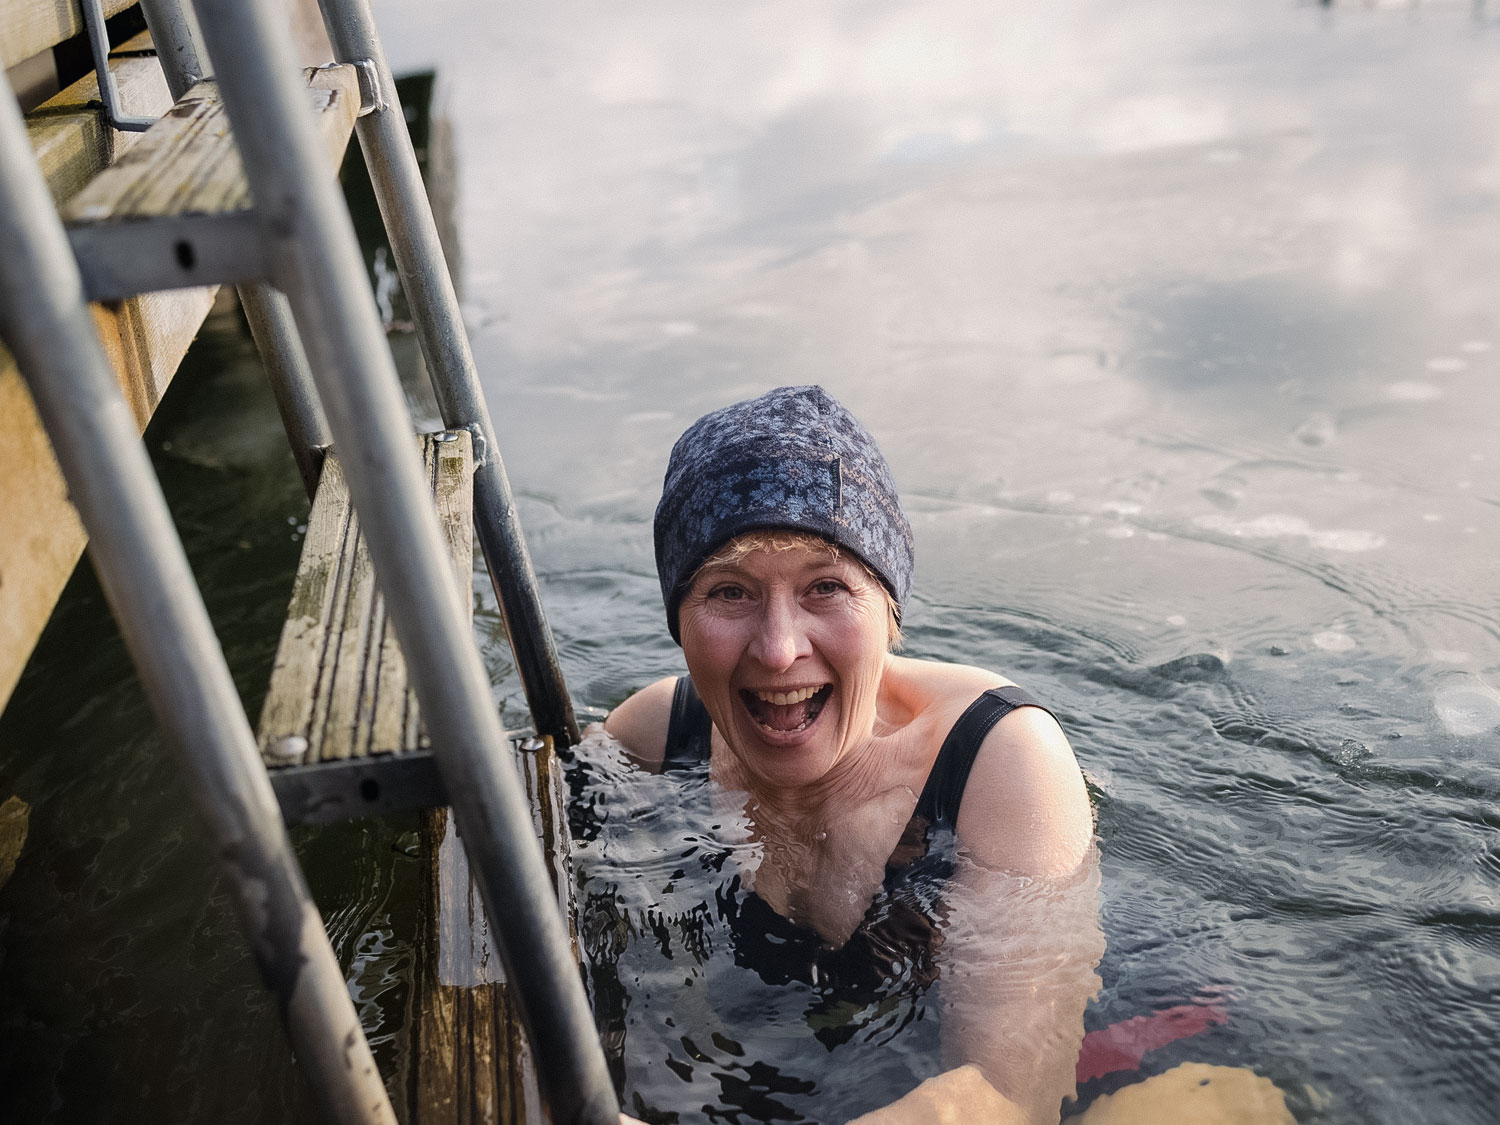 En kvinna badar vinterbad. Hon håller i en stege, skrattar och har en mössa på huvudet.